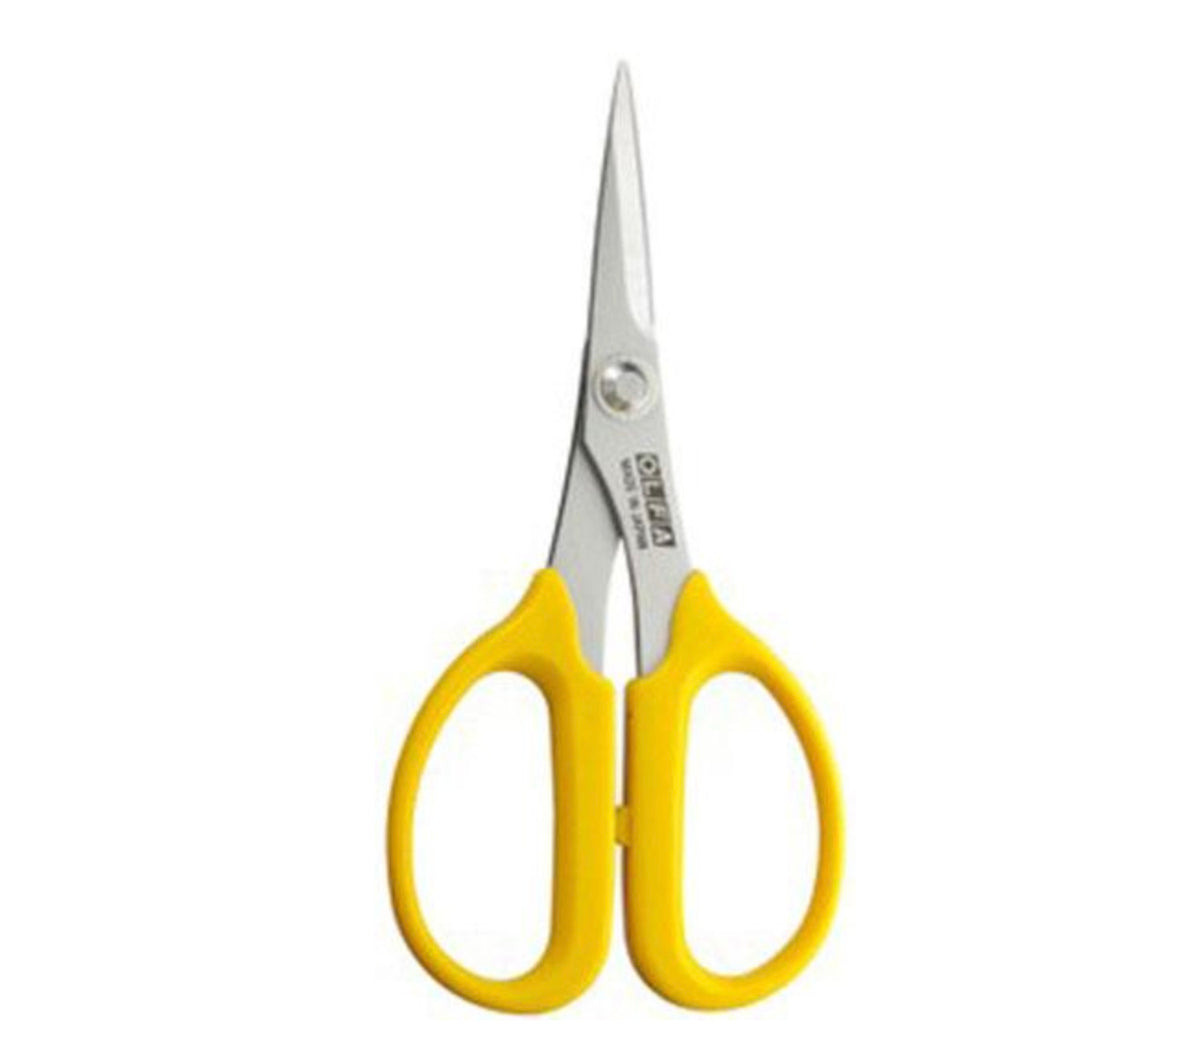 Olfa Precision Applique Scissors 5 in